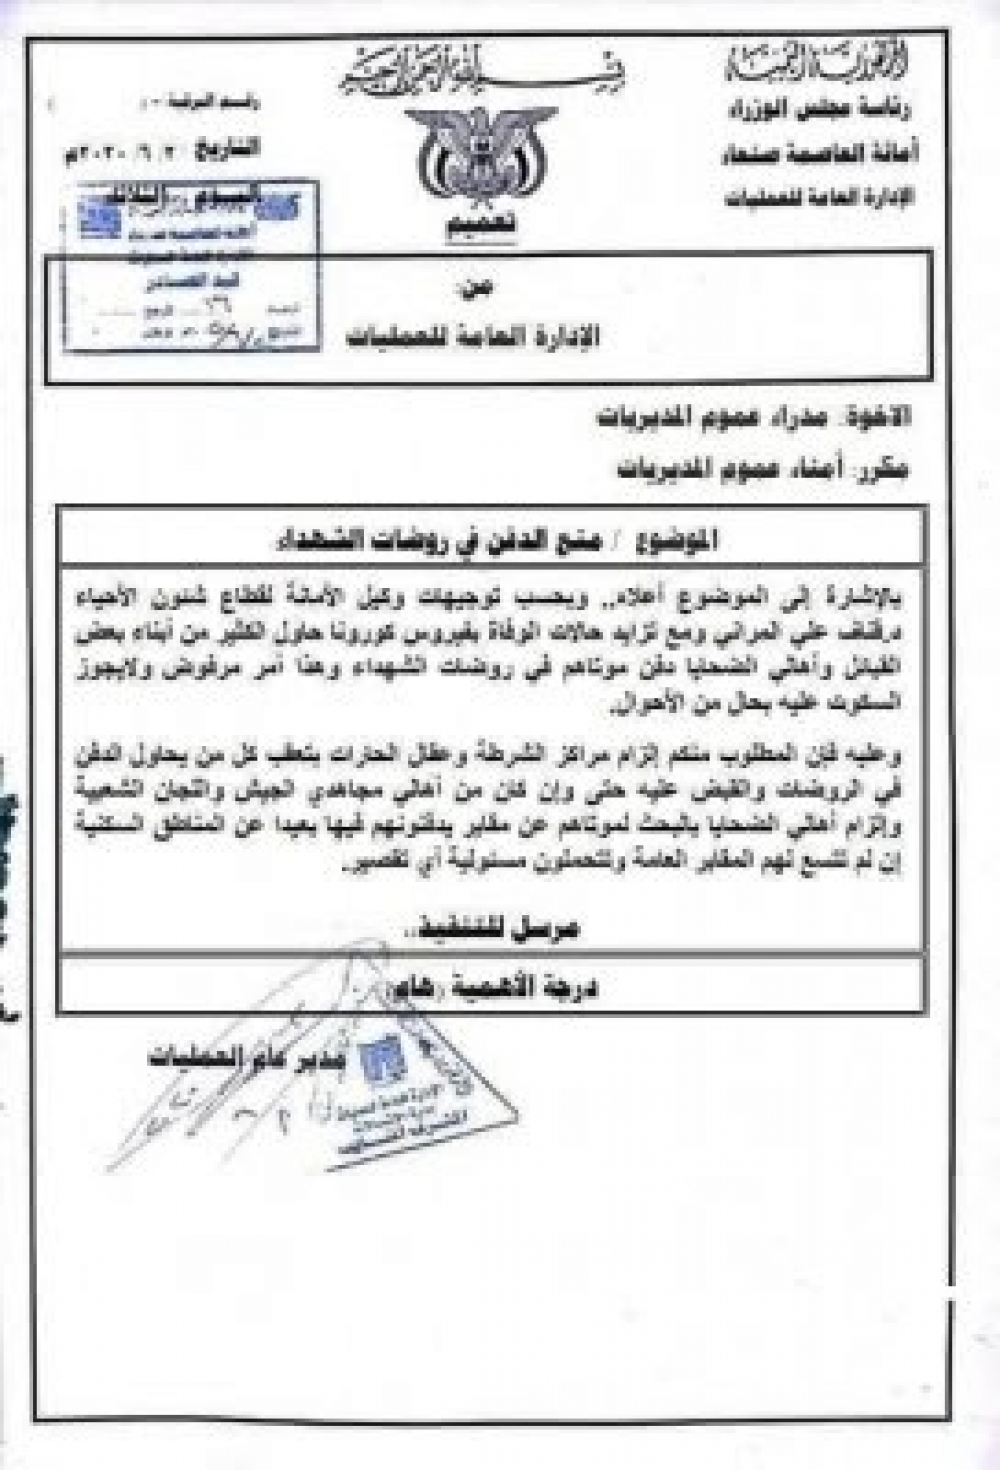 لهذا السبب .. الحوثي يرفض دفن وفيات كورونا في مقابرهم المخصصة بصنعاء  . " نسخة من المذكرة"